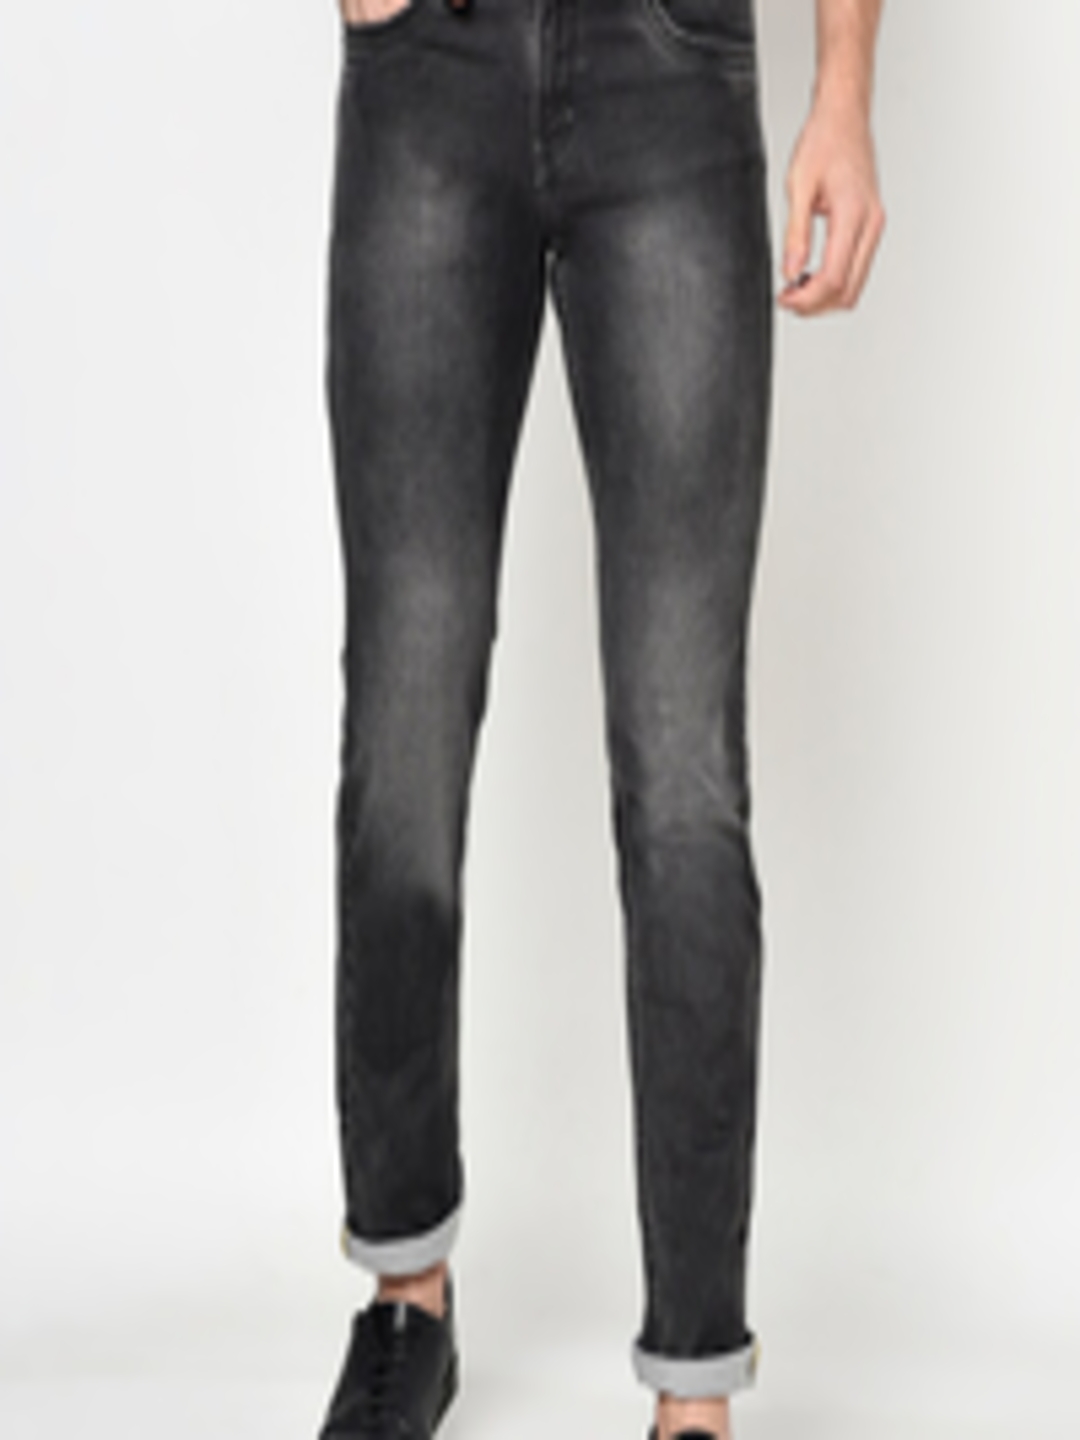 Buy Octave Men Black Light Fade Jeans - Jeans for Men 14427594 | Myntra